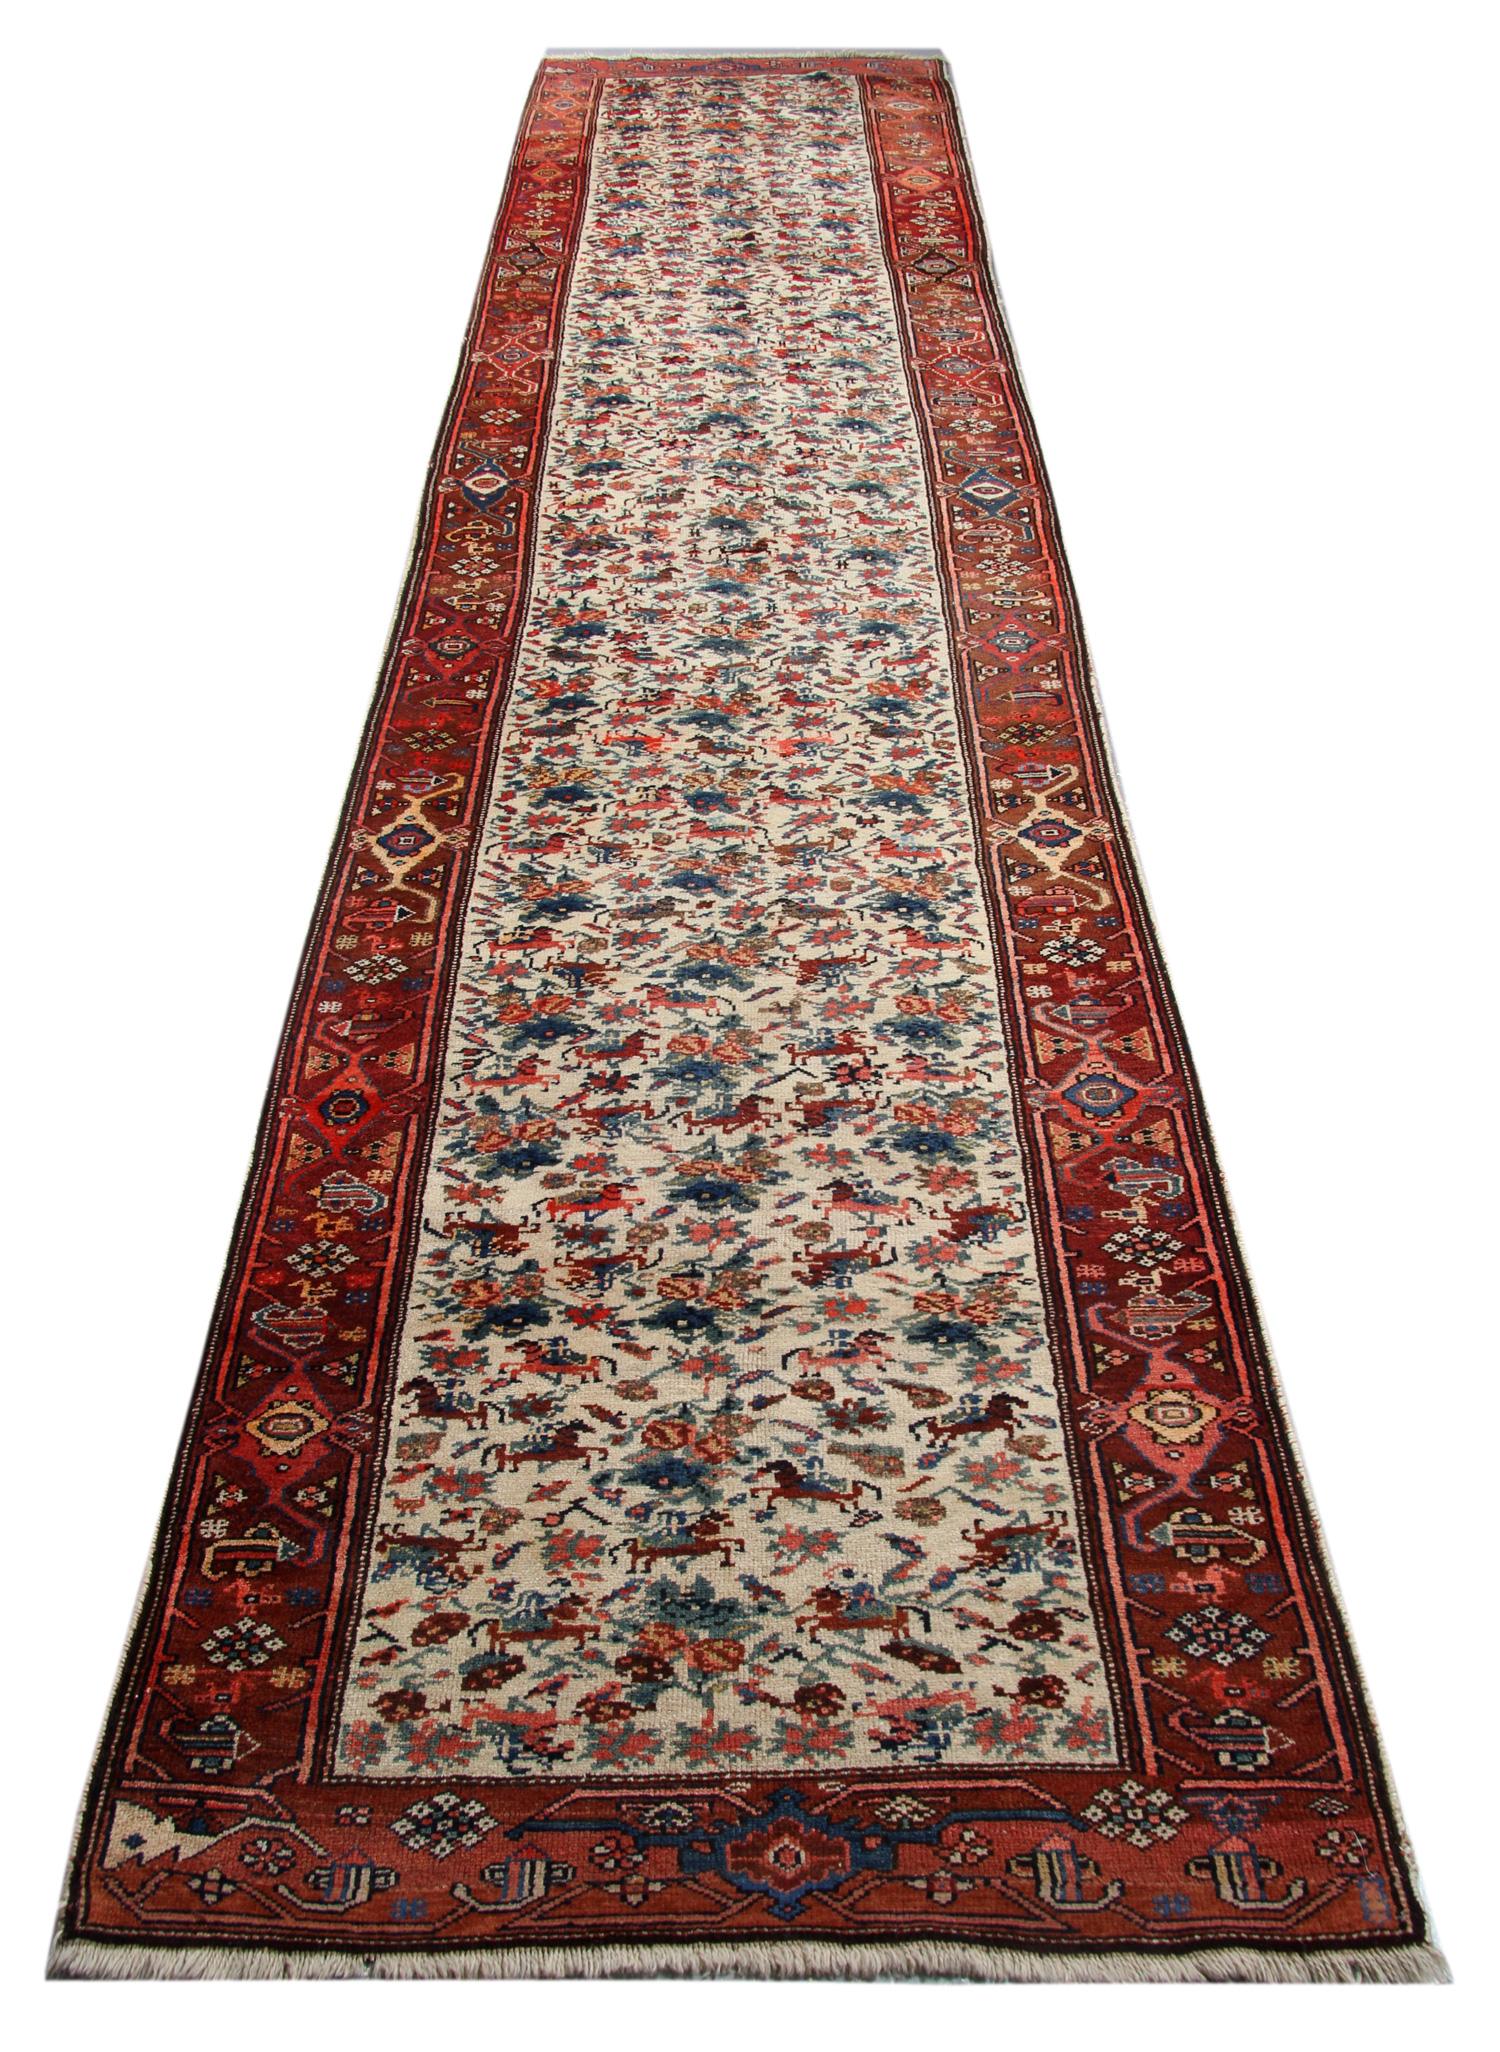 Antike kaukasische Karabagh-Teppiche und Läufer, um 1890. Diese orientalischen Läufer wurden im südöstlichen Kaukasus in der Nähe des kasachischen Gebiets und an der nordöstlichen Grenze hergestellt. Diese antiken Läufer sind in ihrer Qualität und